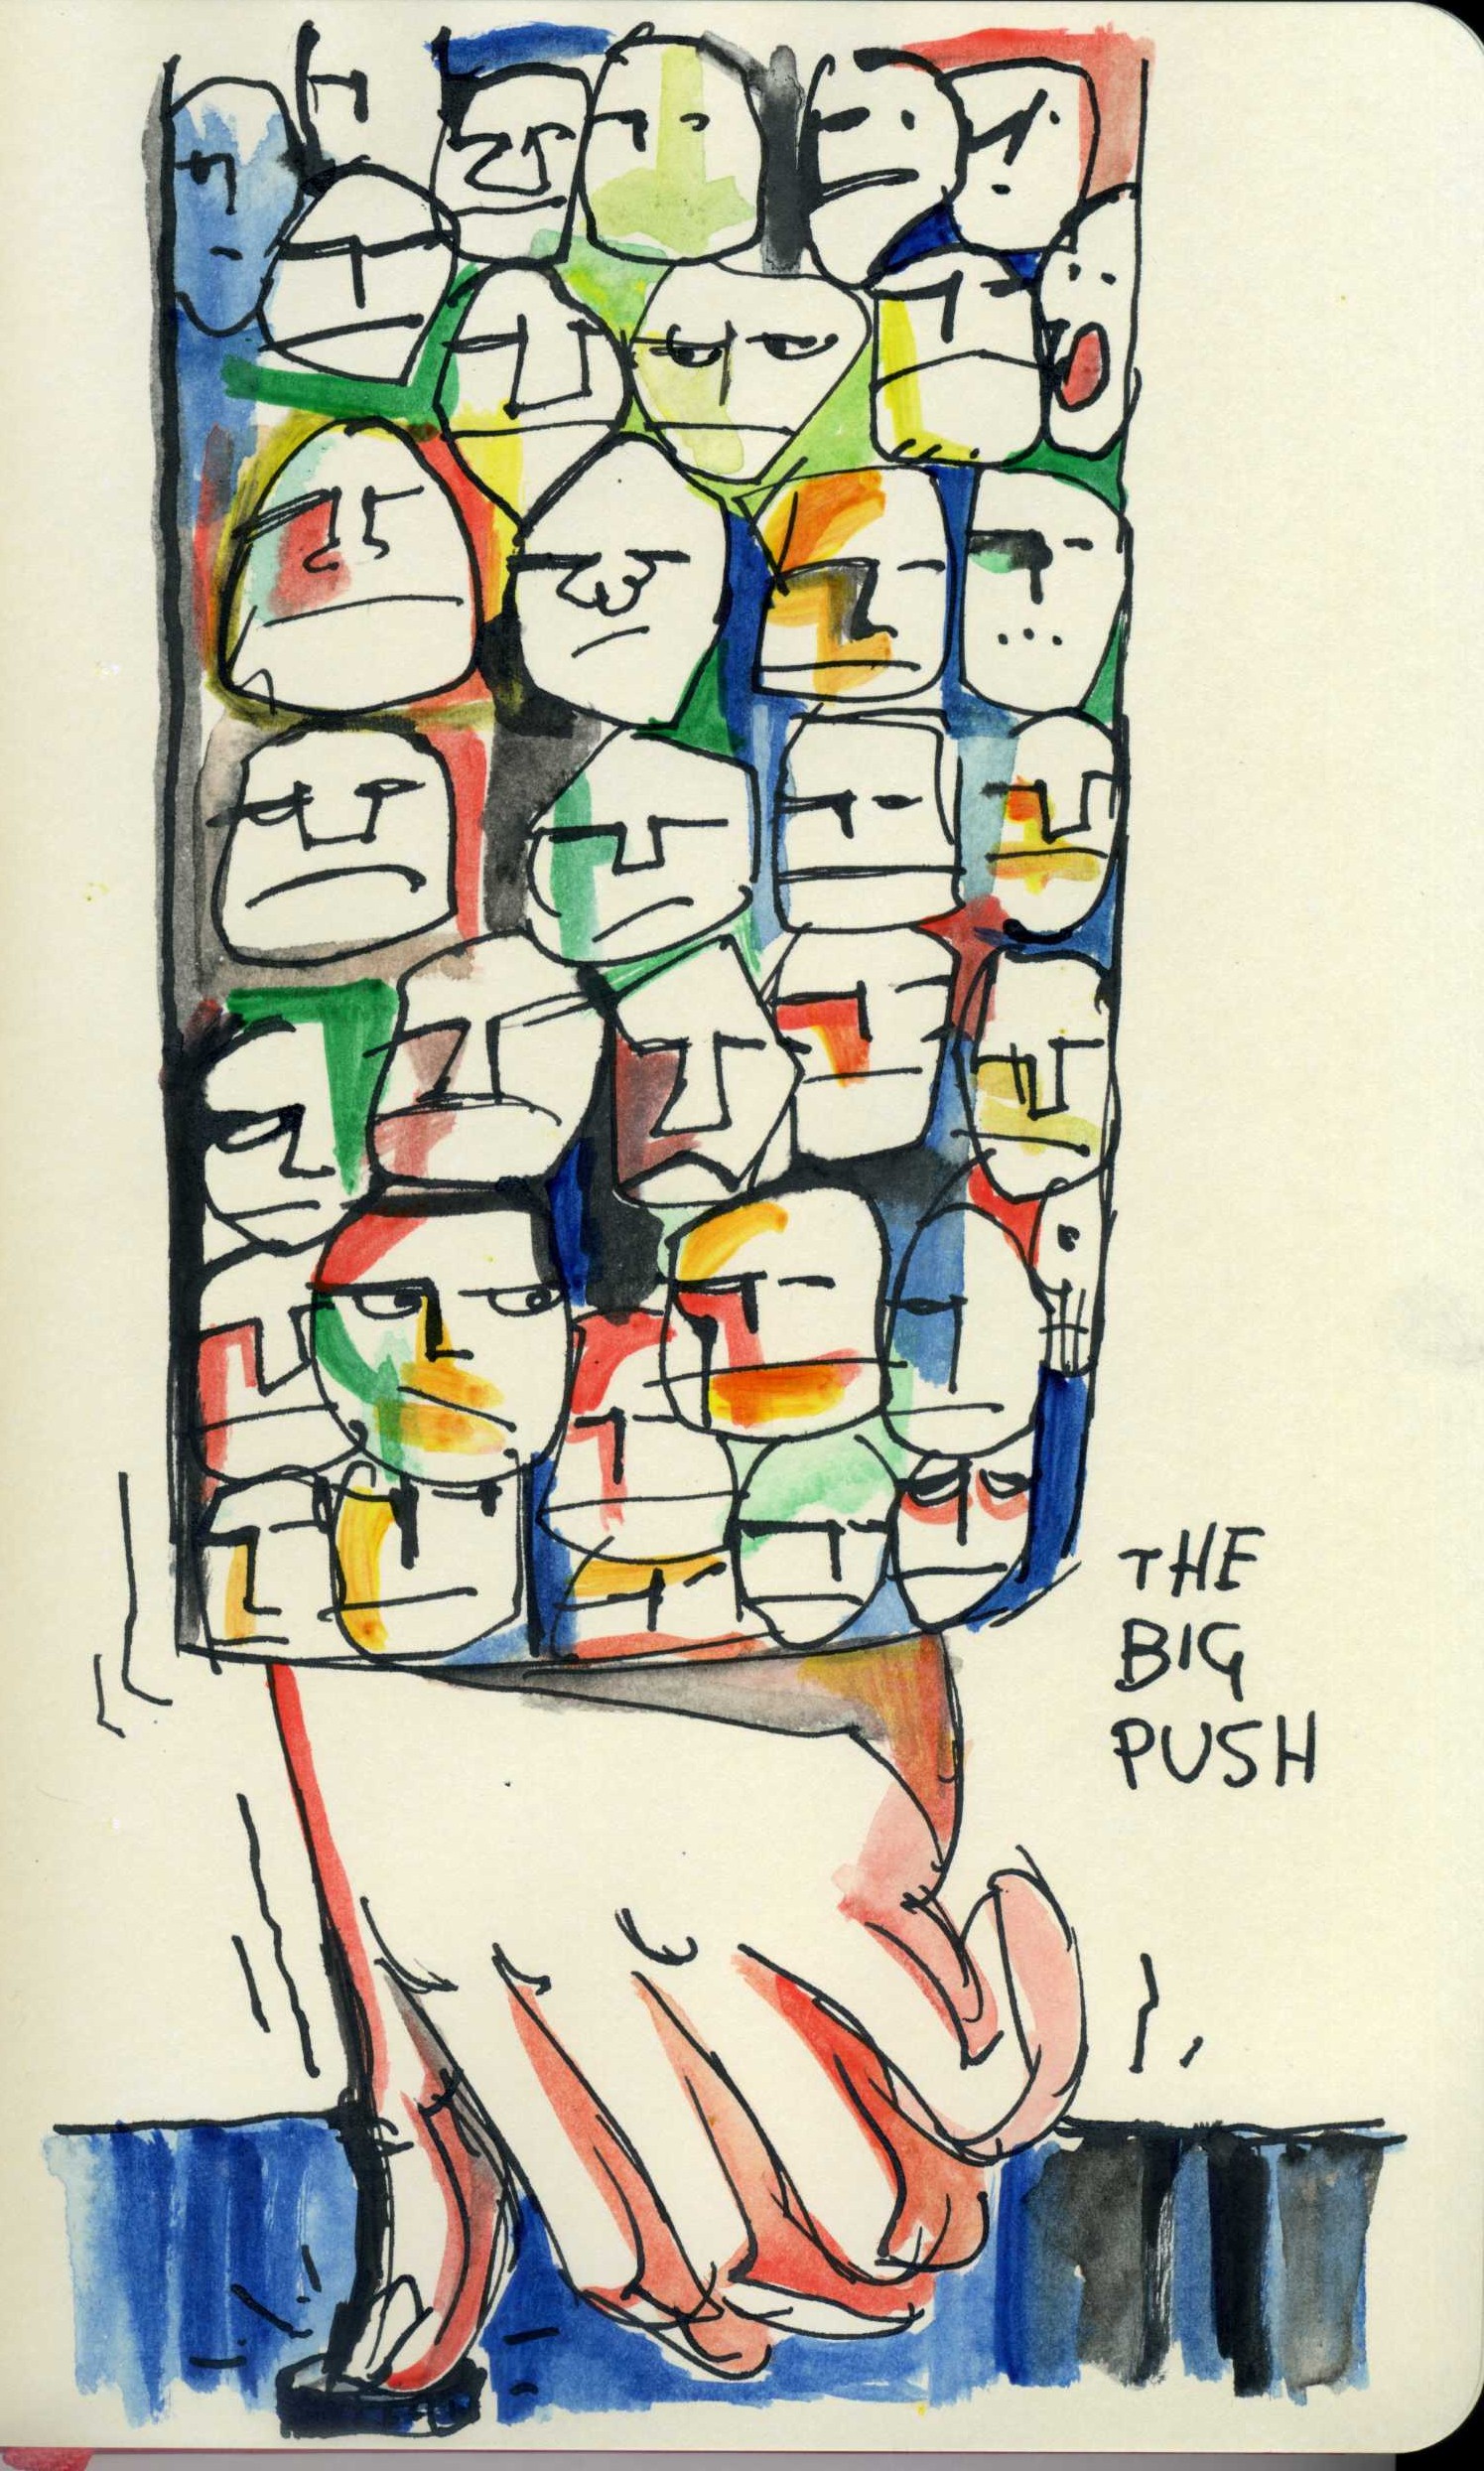 The Big Push.